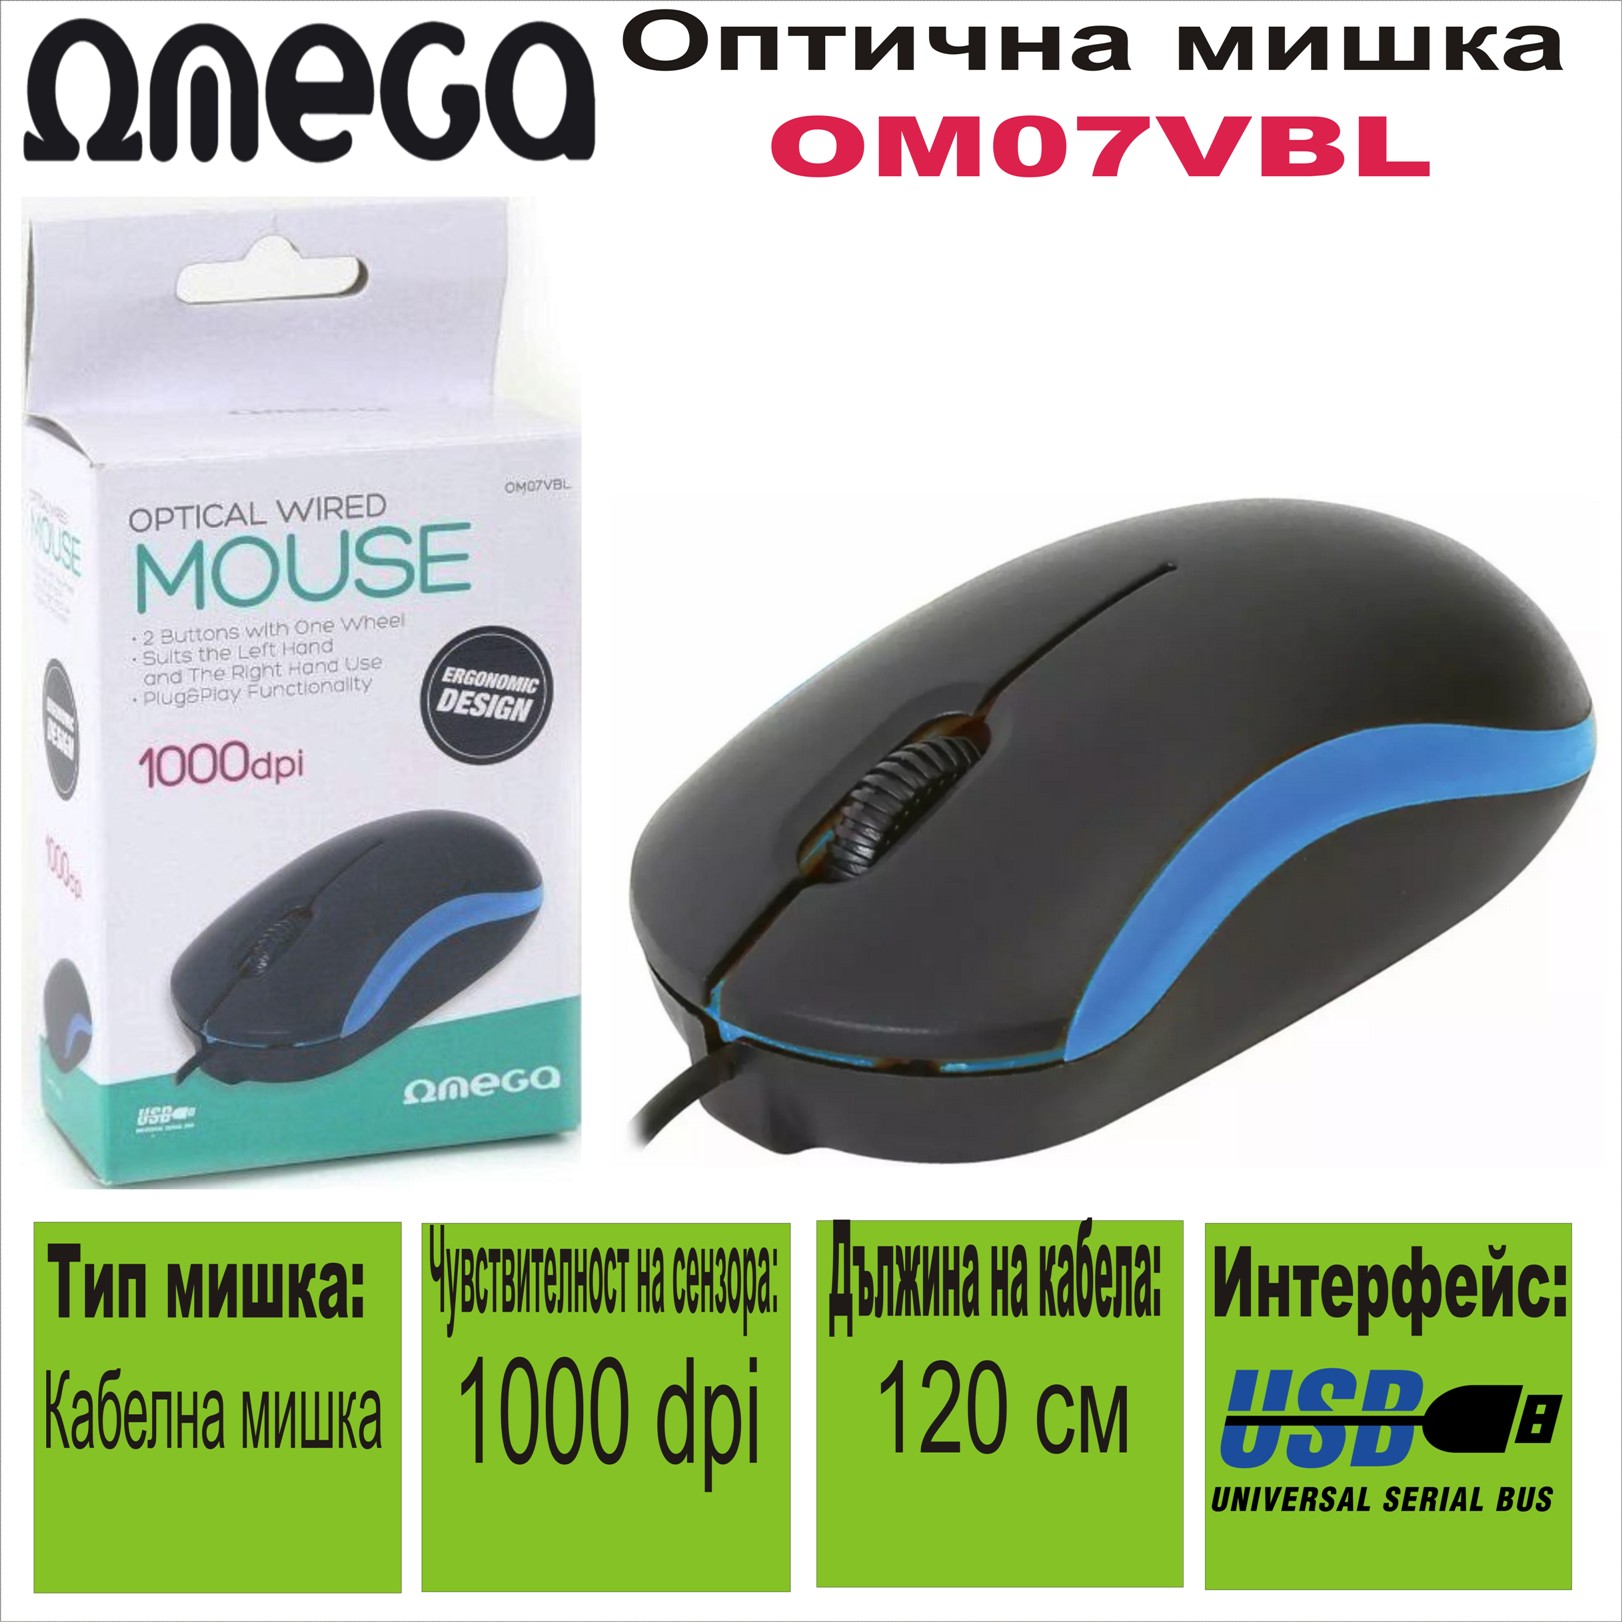 Оптична мишка Omega OM07VBL 3D USB